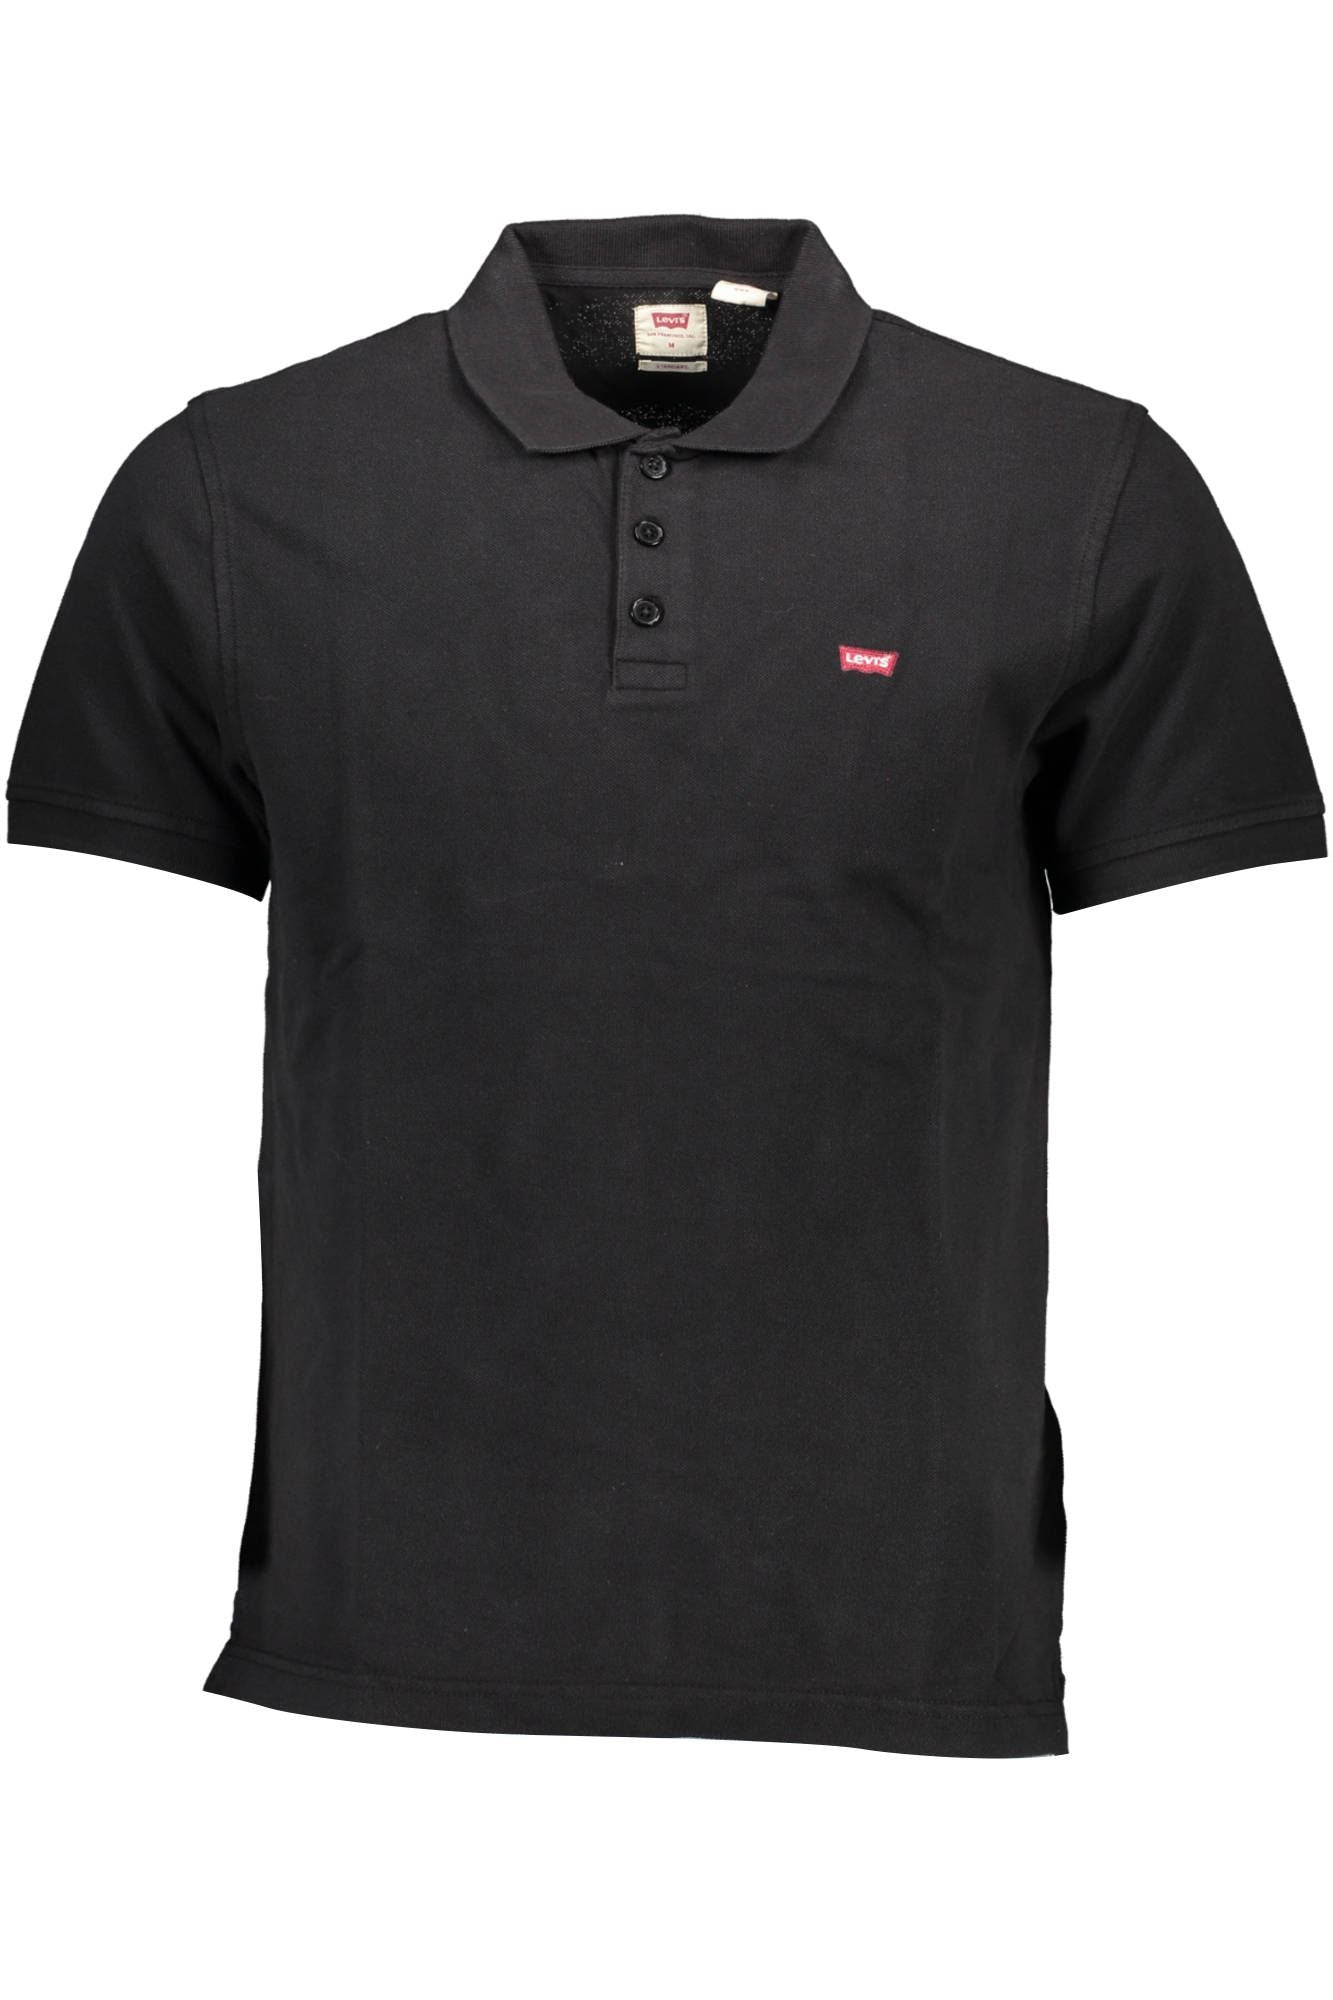 Levi's Sleek Cotton Polo Shirt with Logo